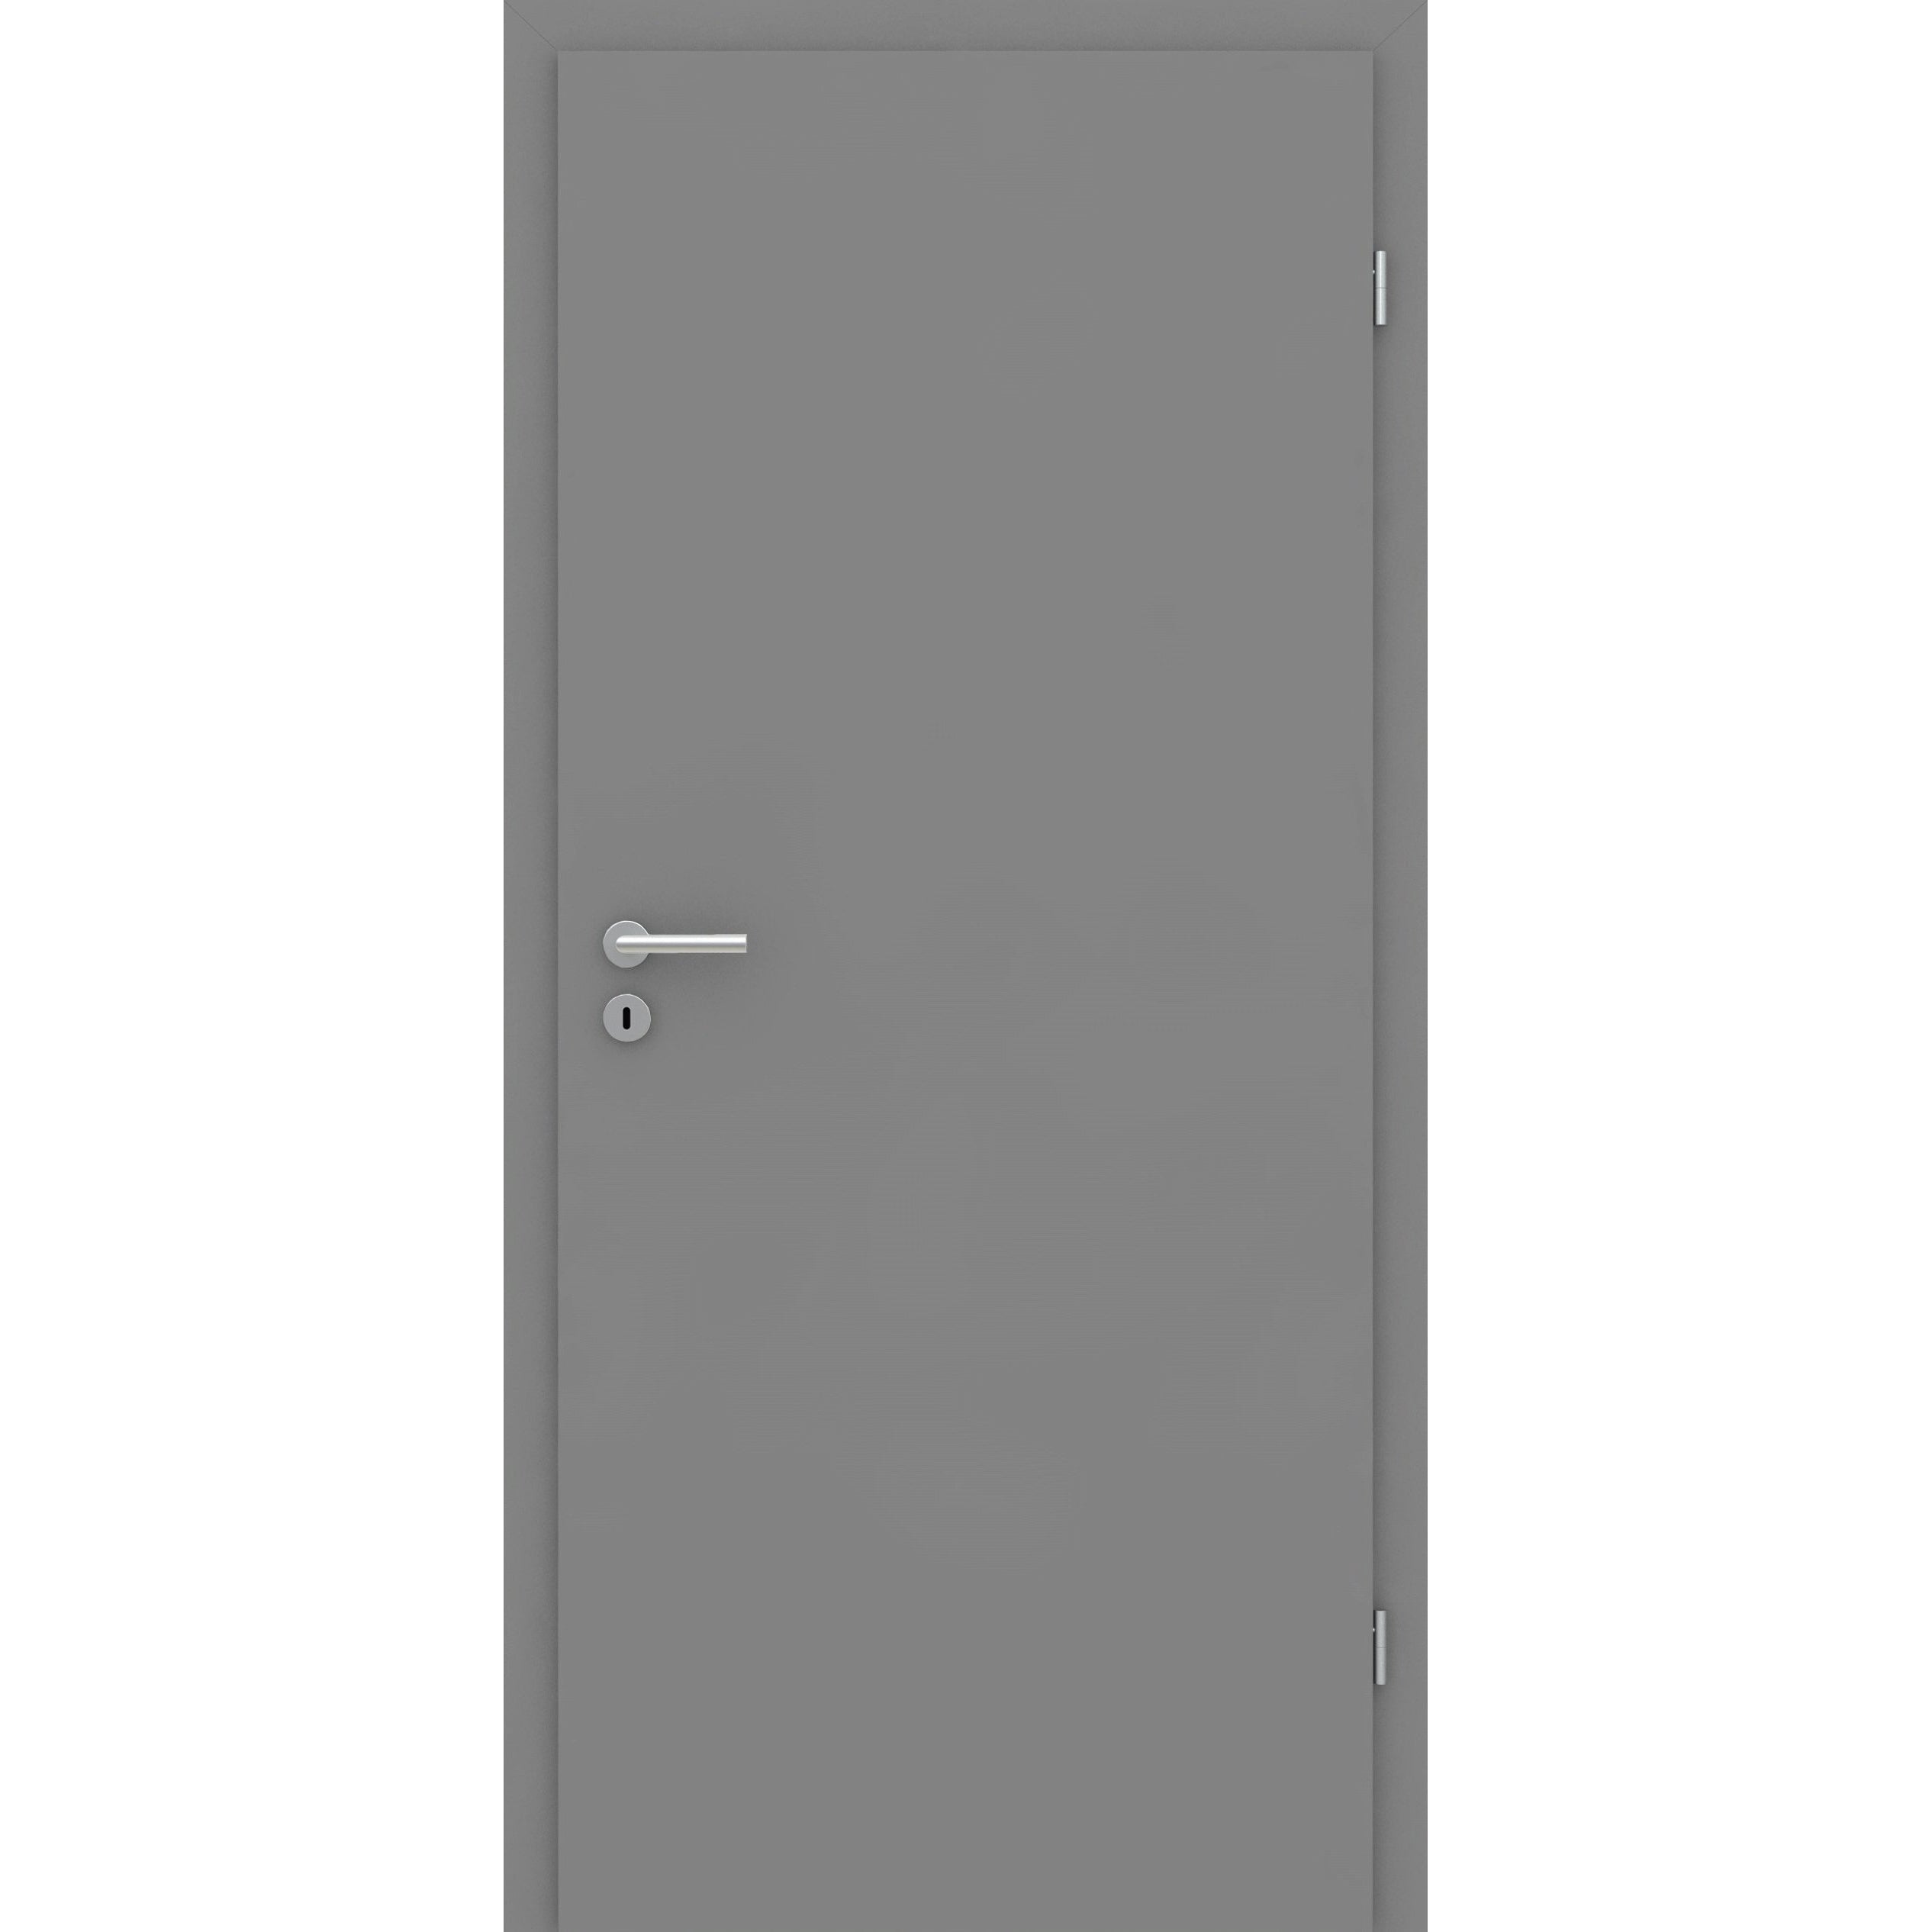 Wohnungseingangstür mit Zarge grau glatt Designkante SK3 / KK3